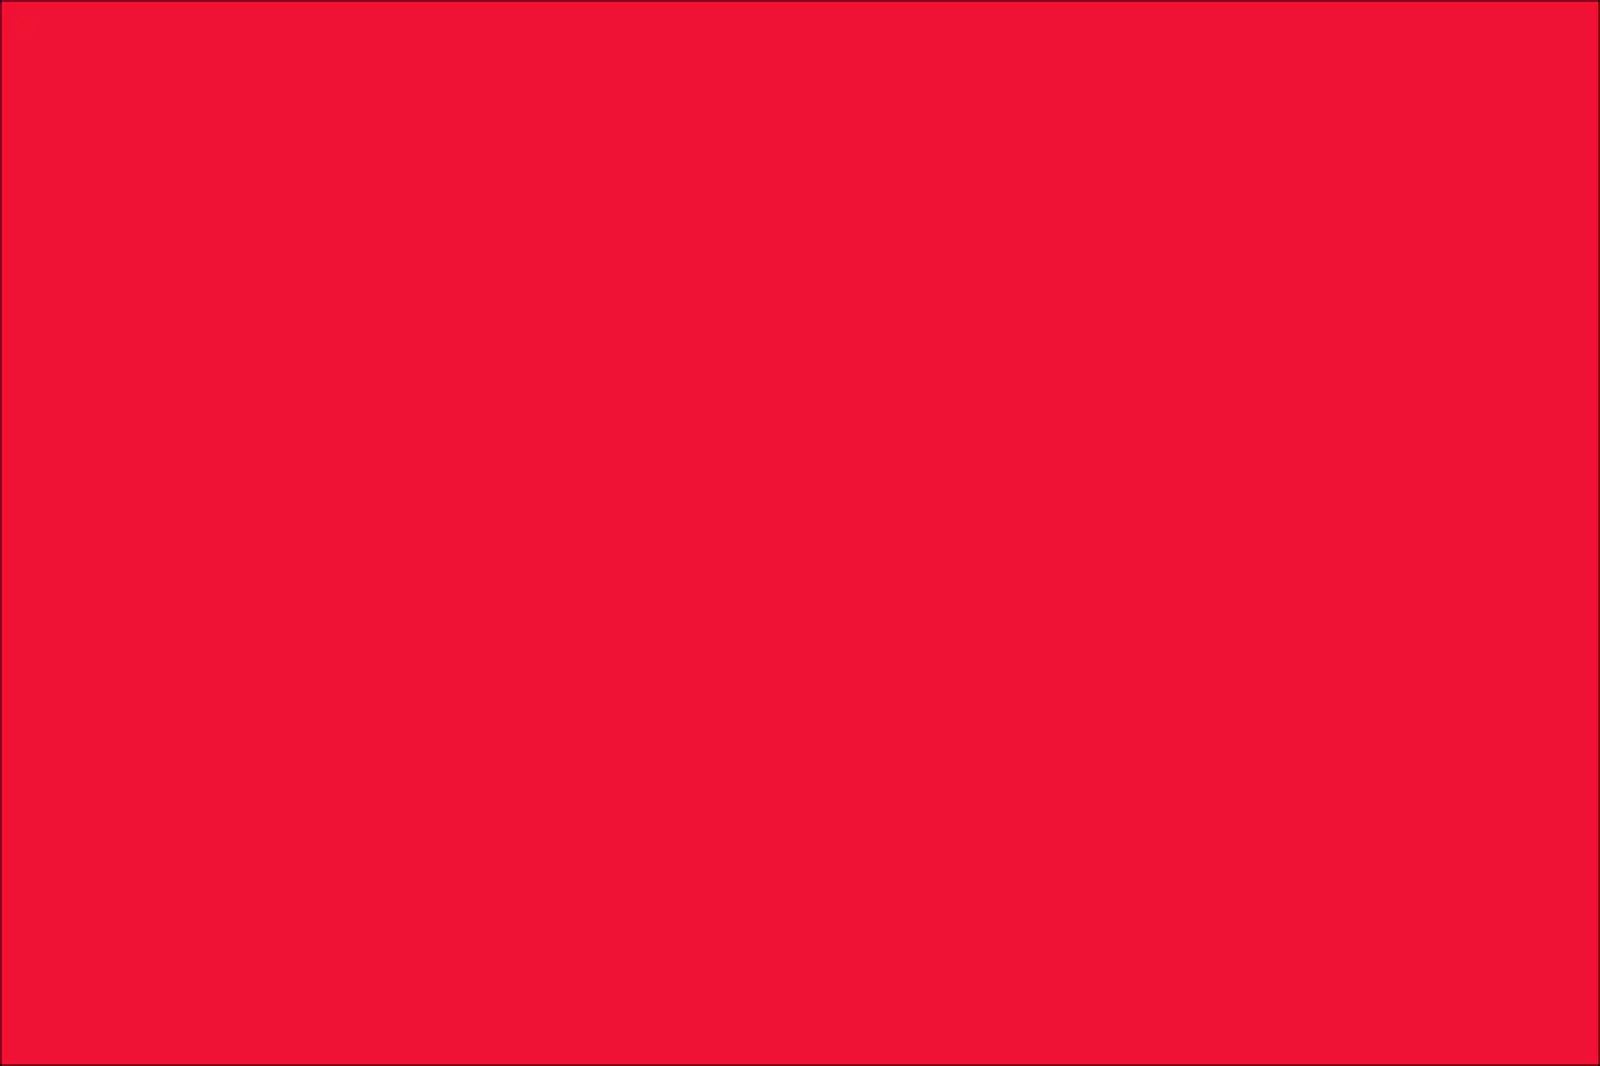 Red Manicure (156 Fotoen): Design vu Quadrat Neel mat rout an d'Biger Larniker, Neibarkeete vun der Summermann a Kombinatioun vu roude a gréng 24419_7